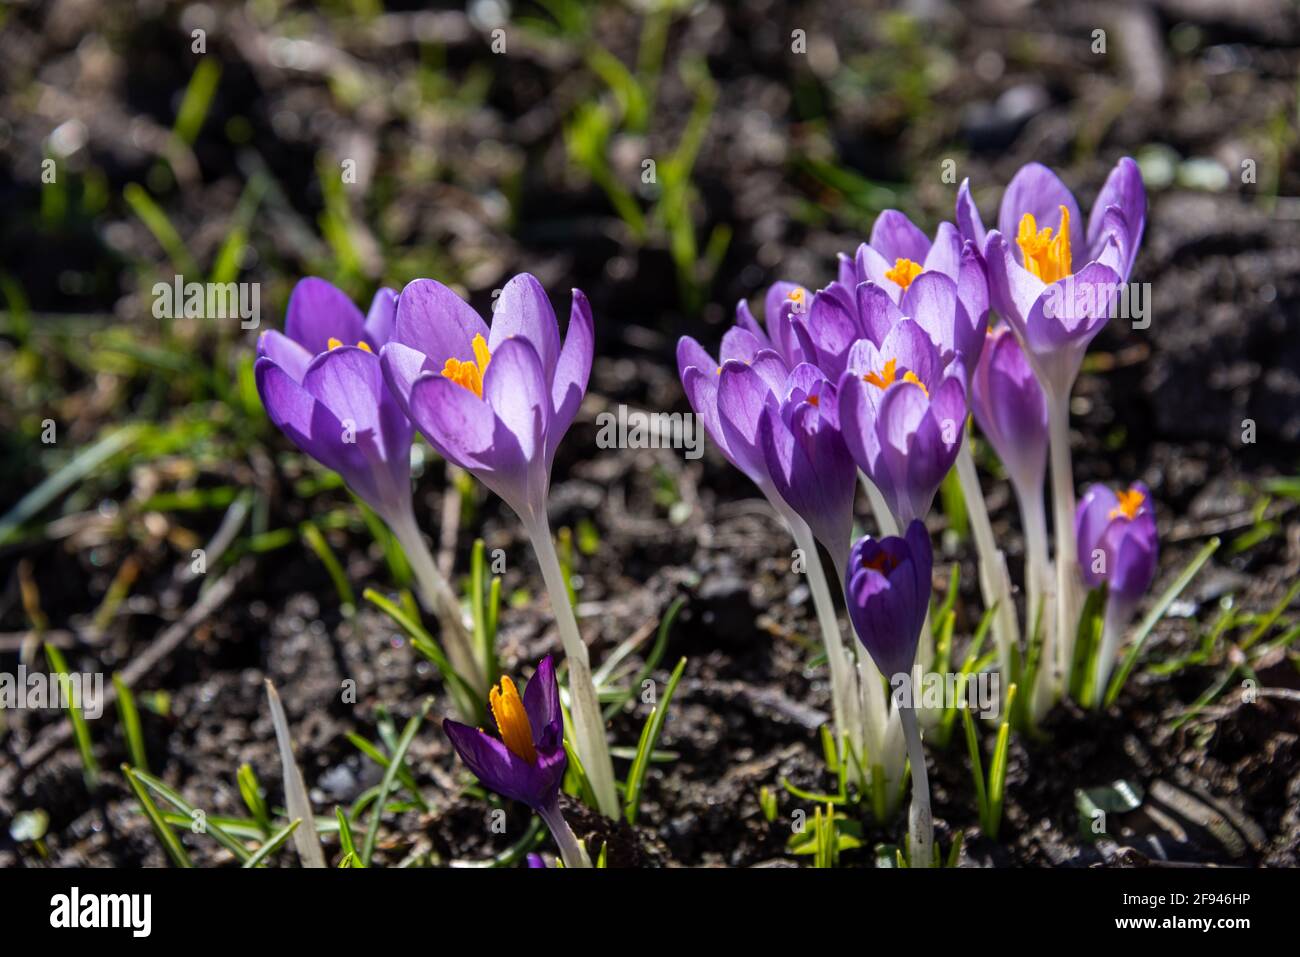 Krokusse als Frühlingsboten auf einer Wiese im Park Stock Photo - Alamy